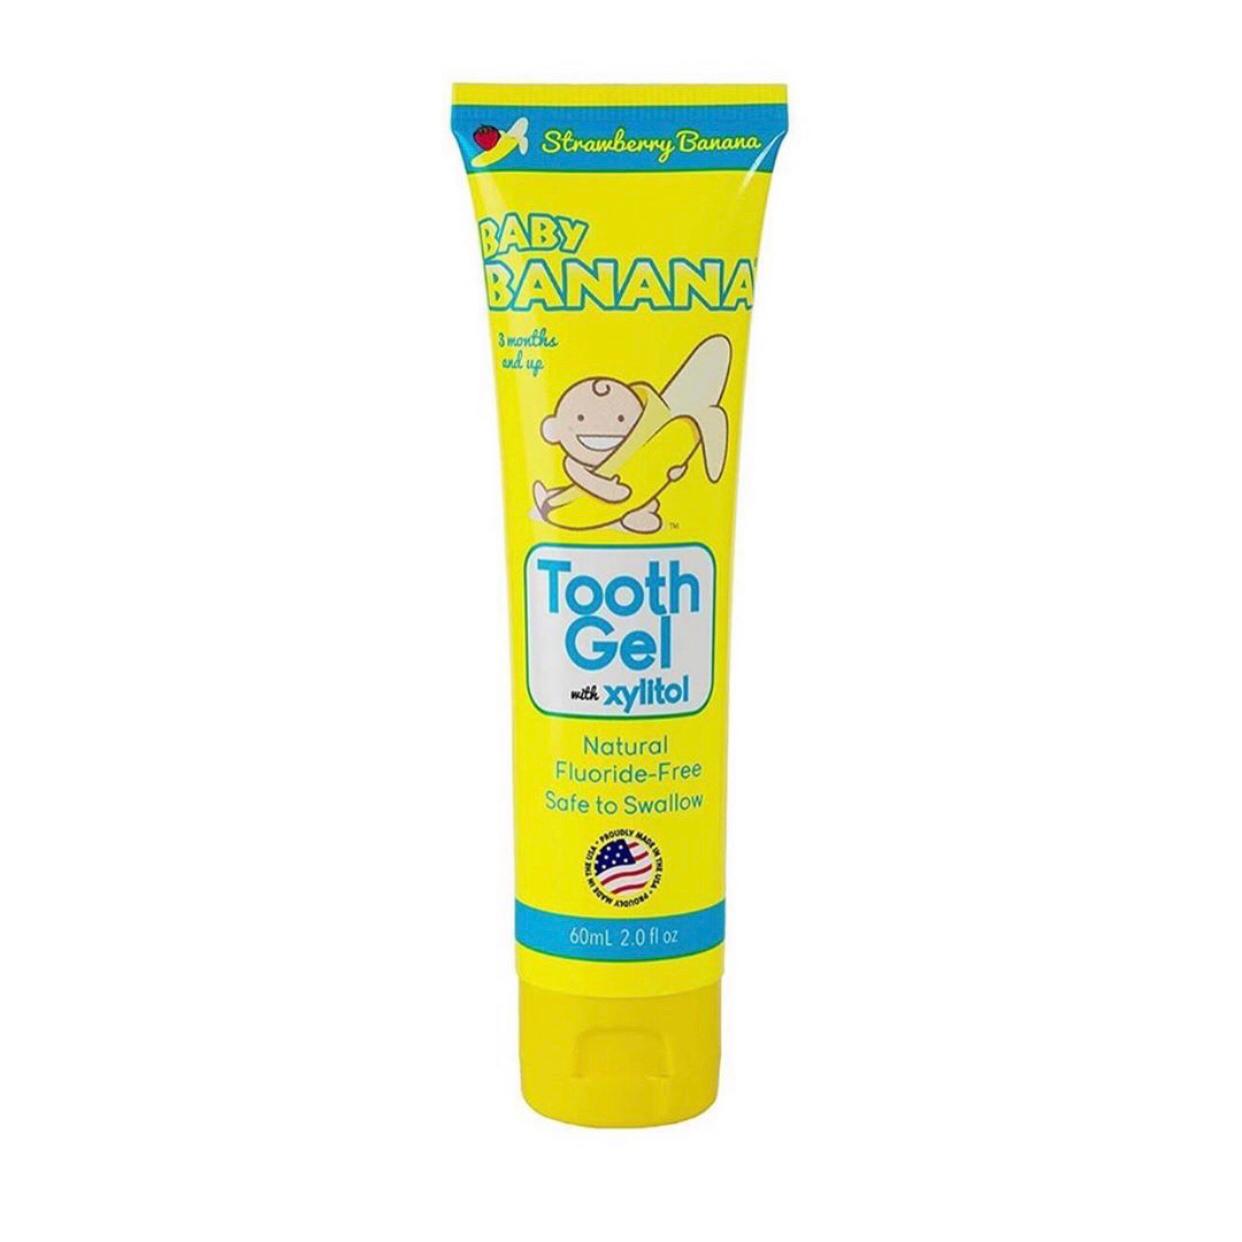 Crema de dientes Baby Banana